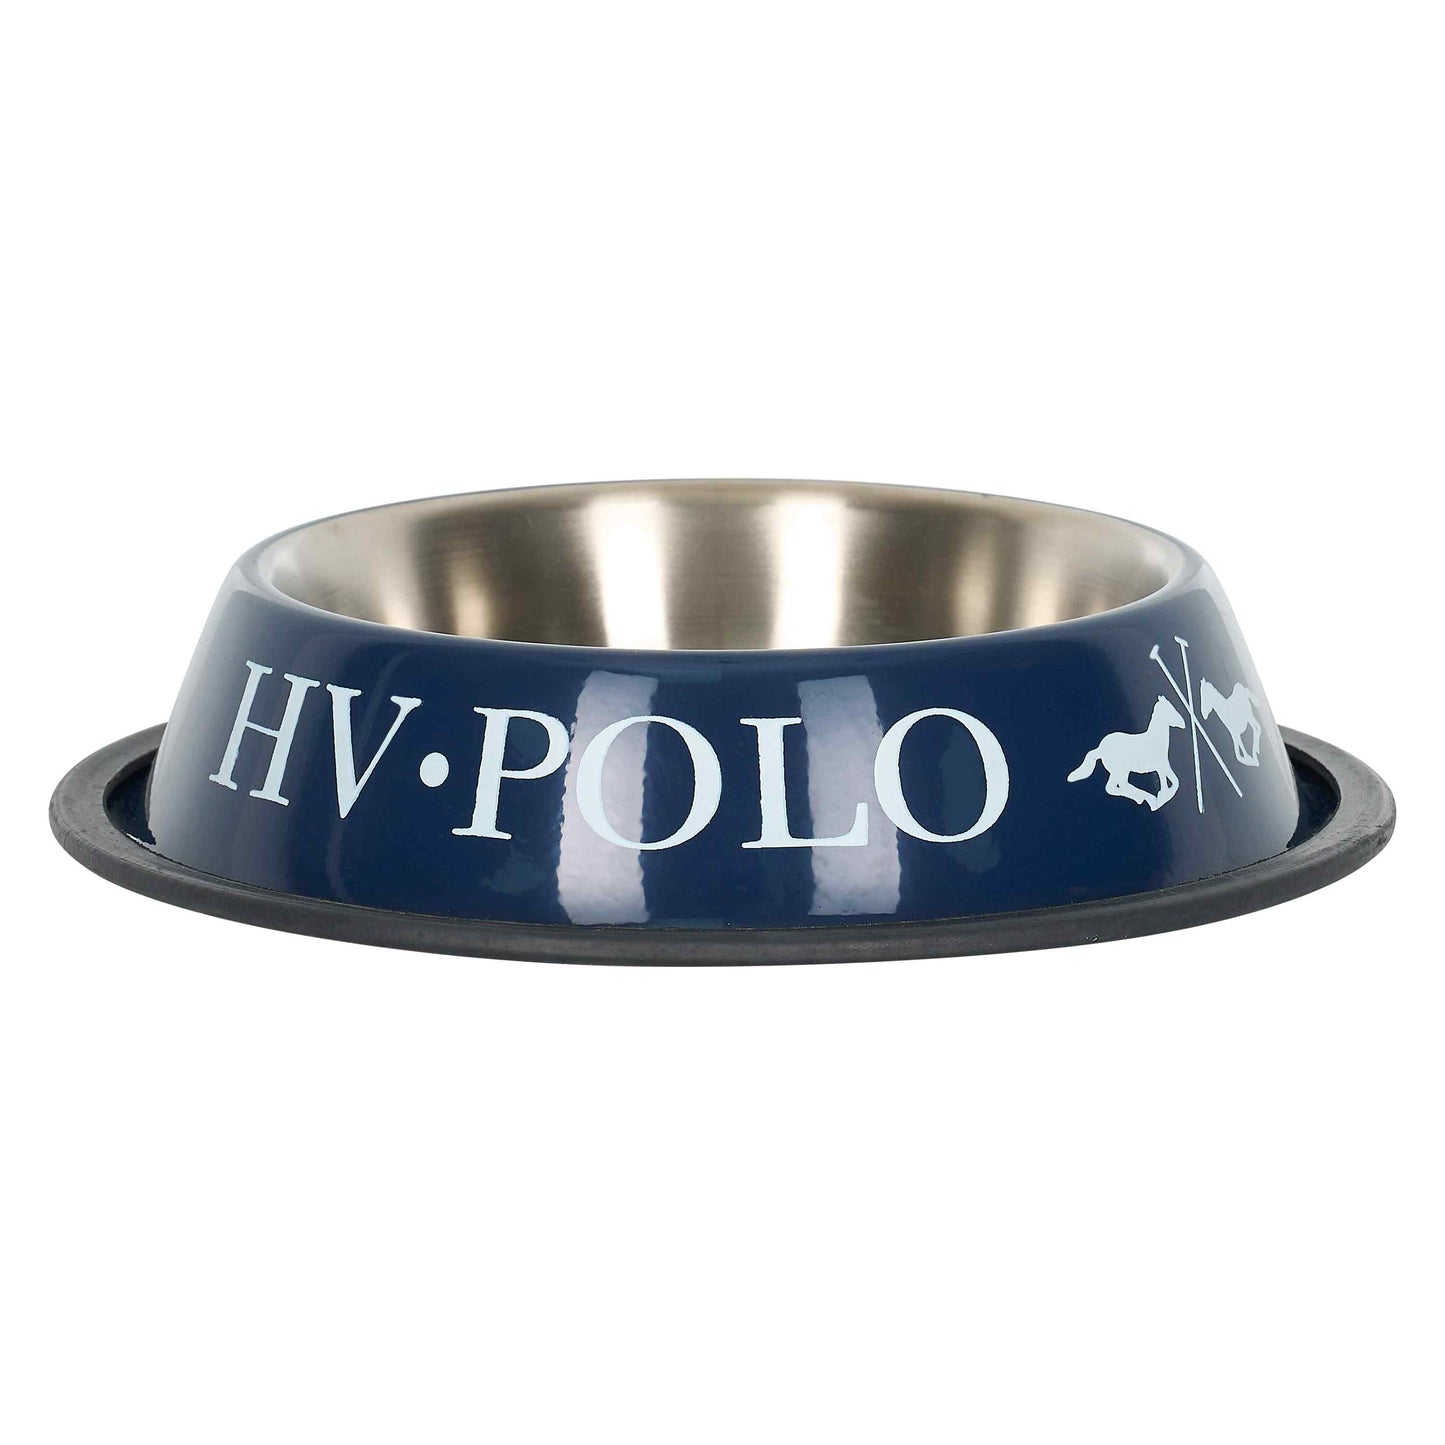 HV Polo Dog Feeding Bowl, matskål för hund med anti-slip